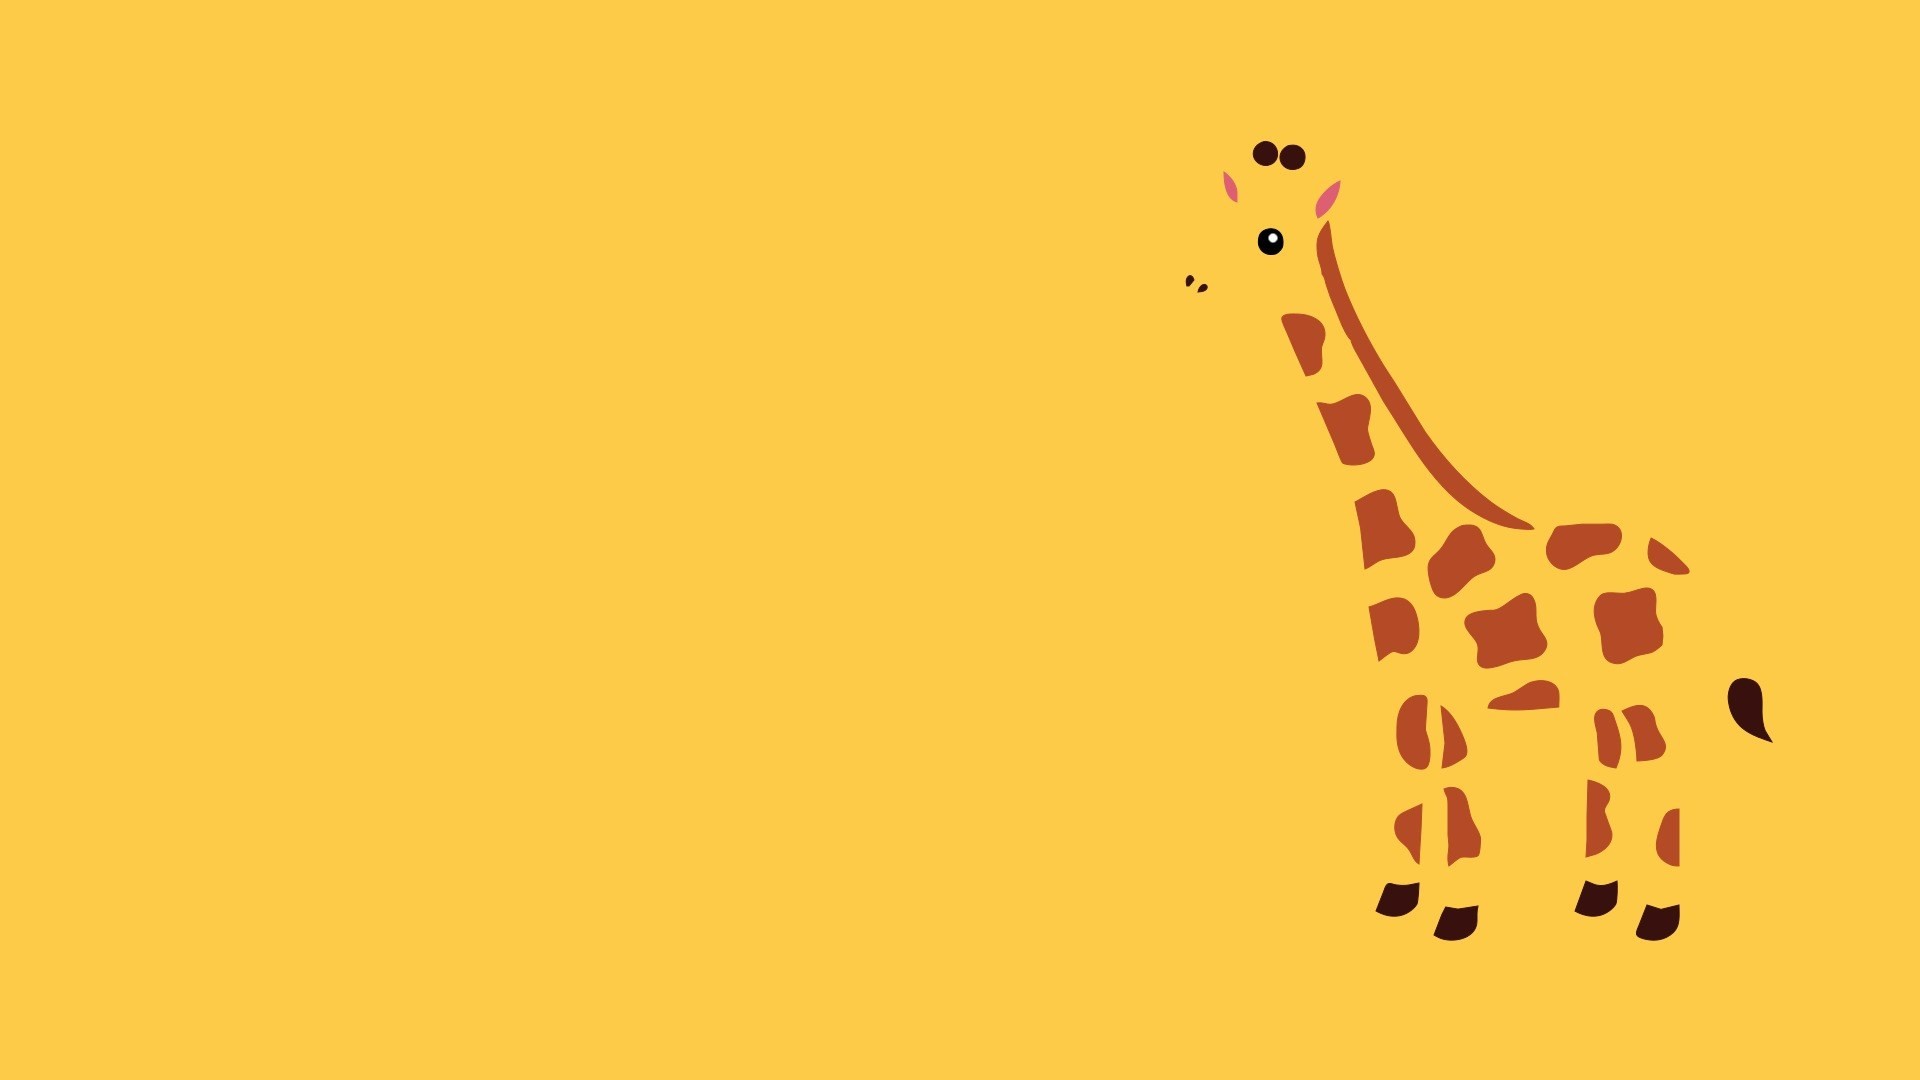 1920x1080 High Quality Free Giraffe Wallpapers Ã Giraffe Wallpaper